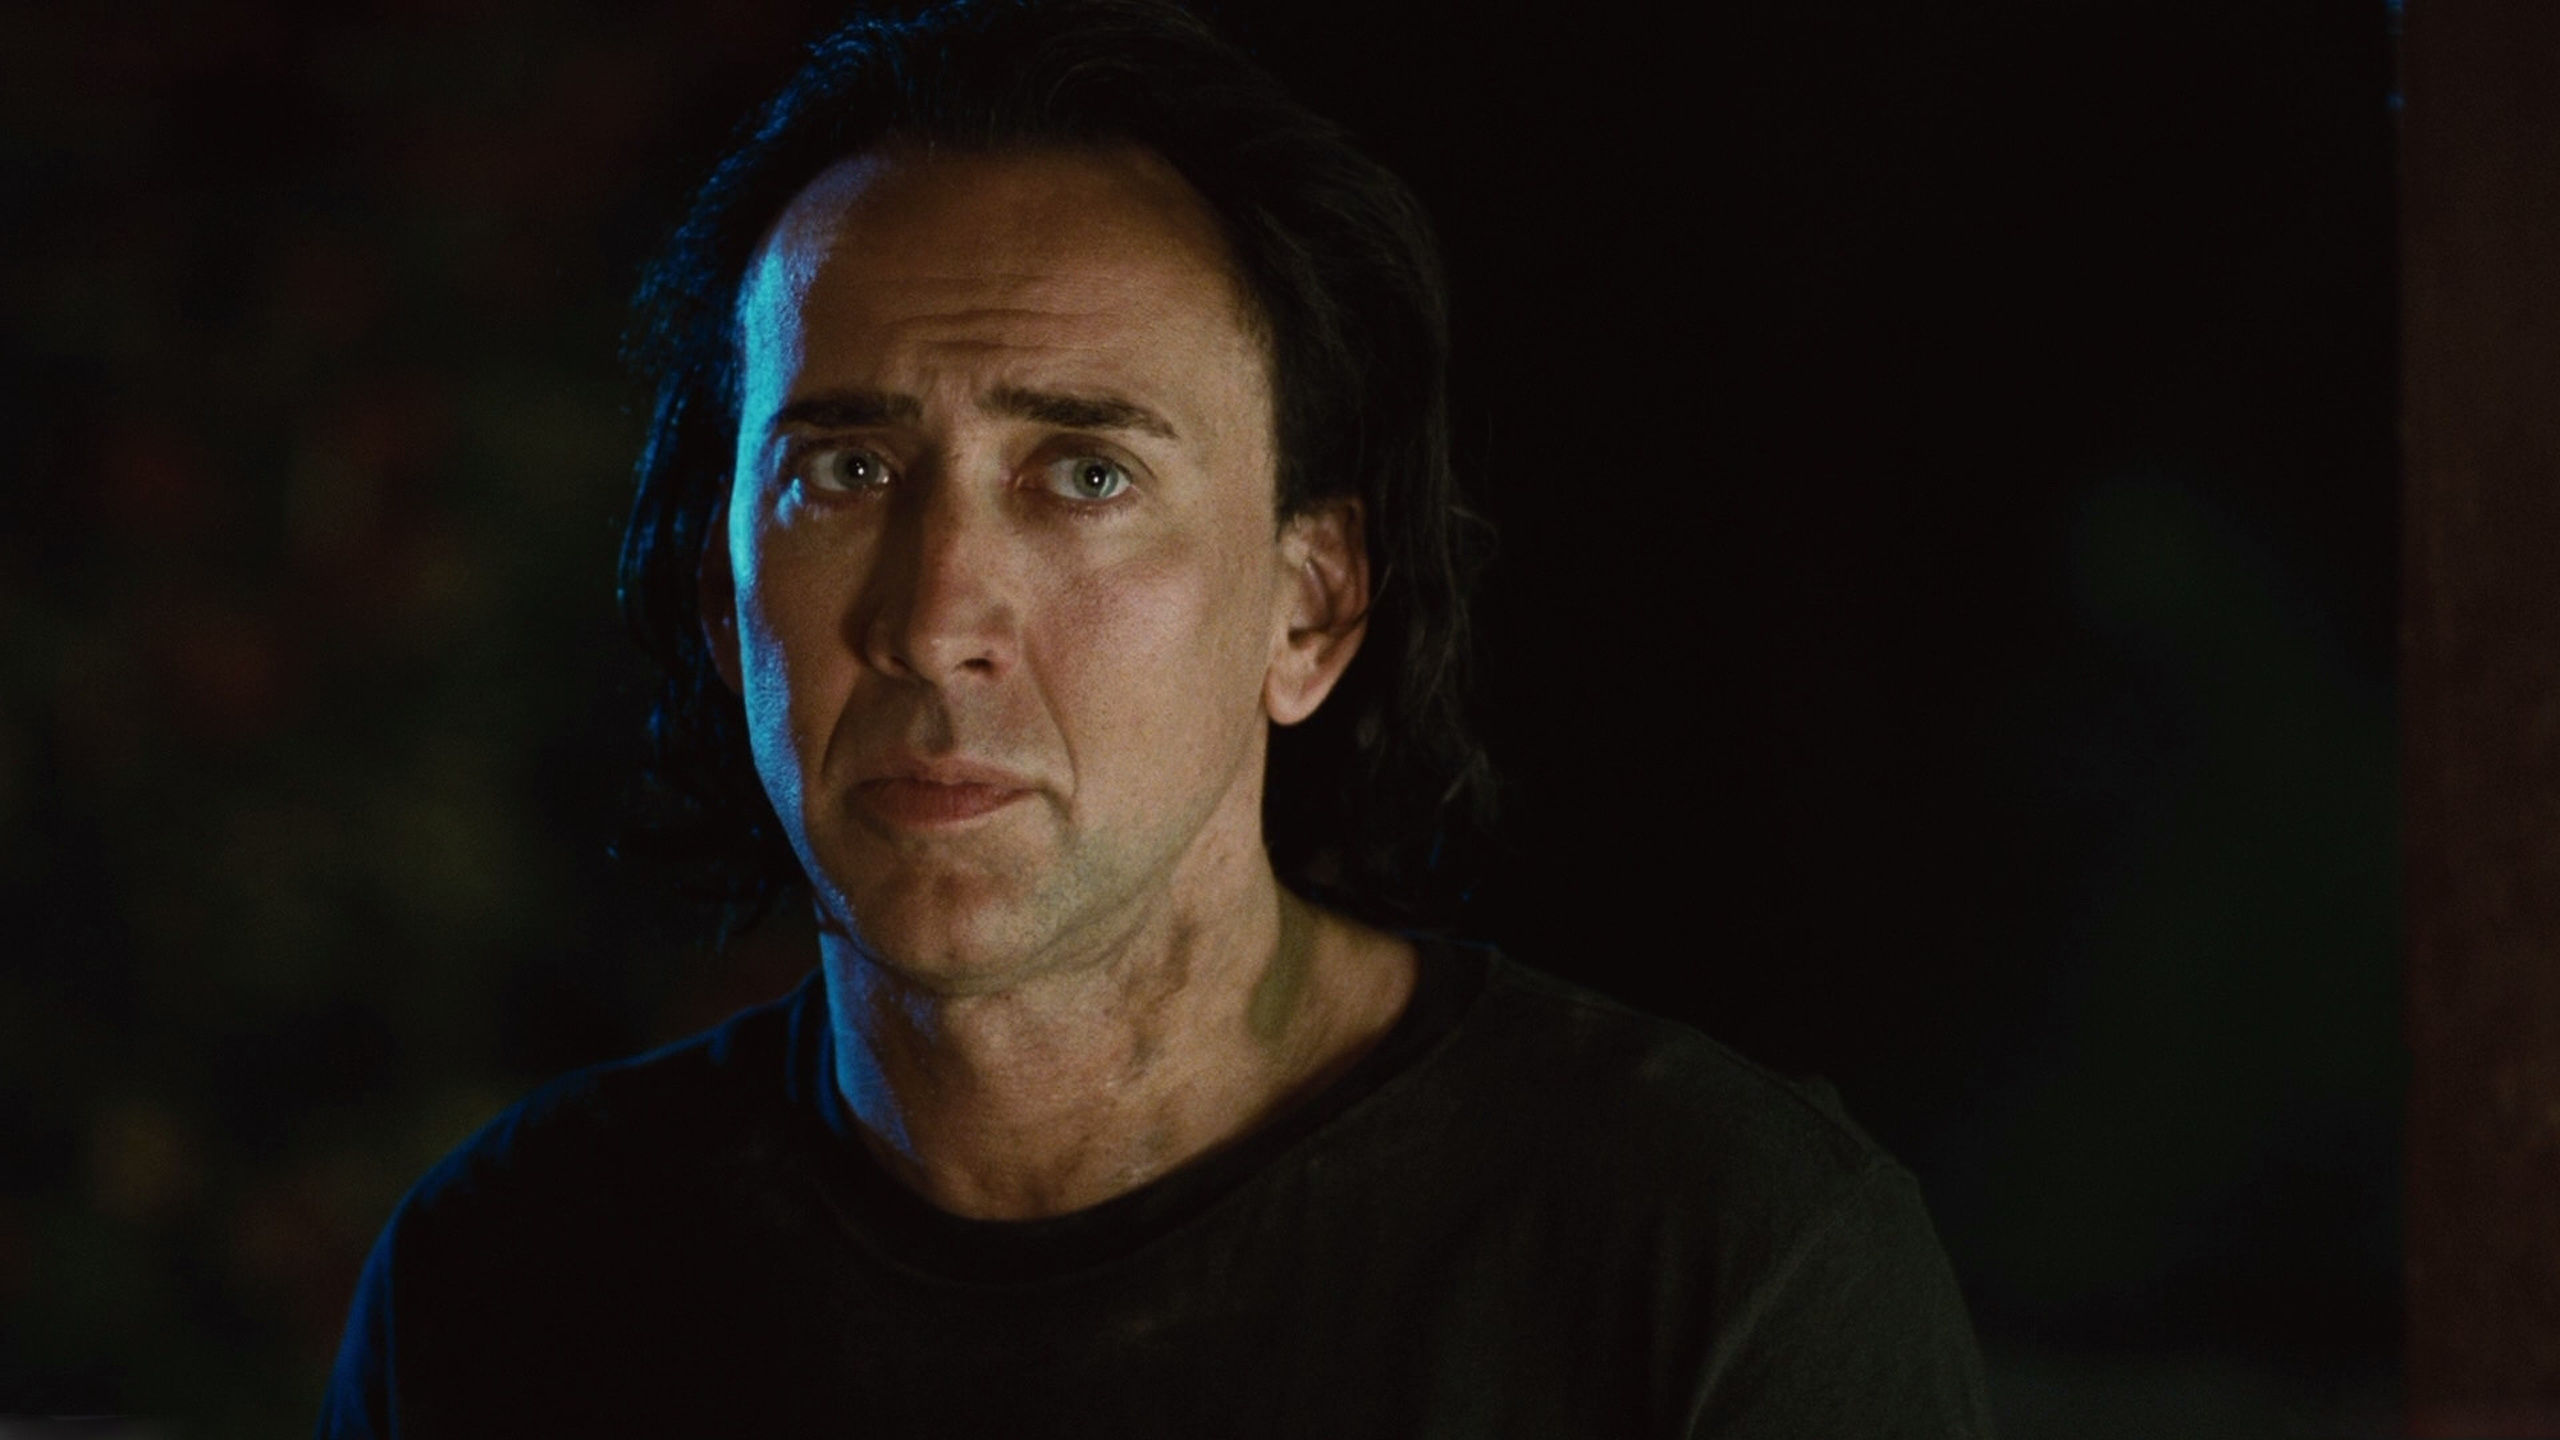 Nicolas Cage, Movies, Funny wallpapers, 2560x1440 HD Desktop